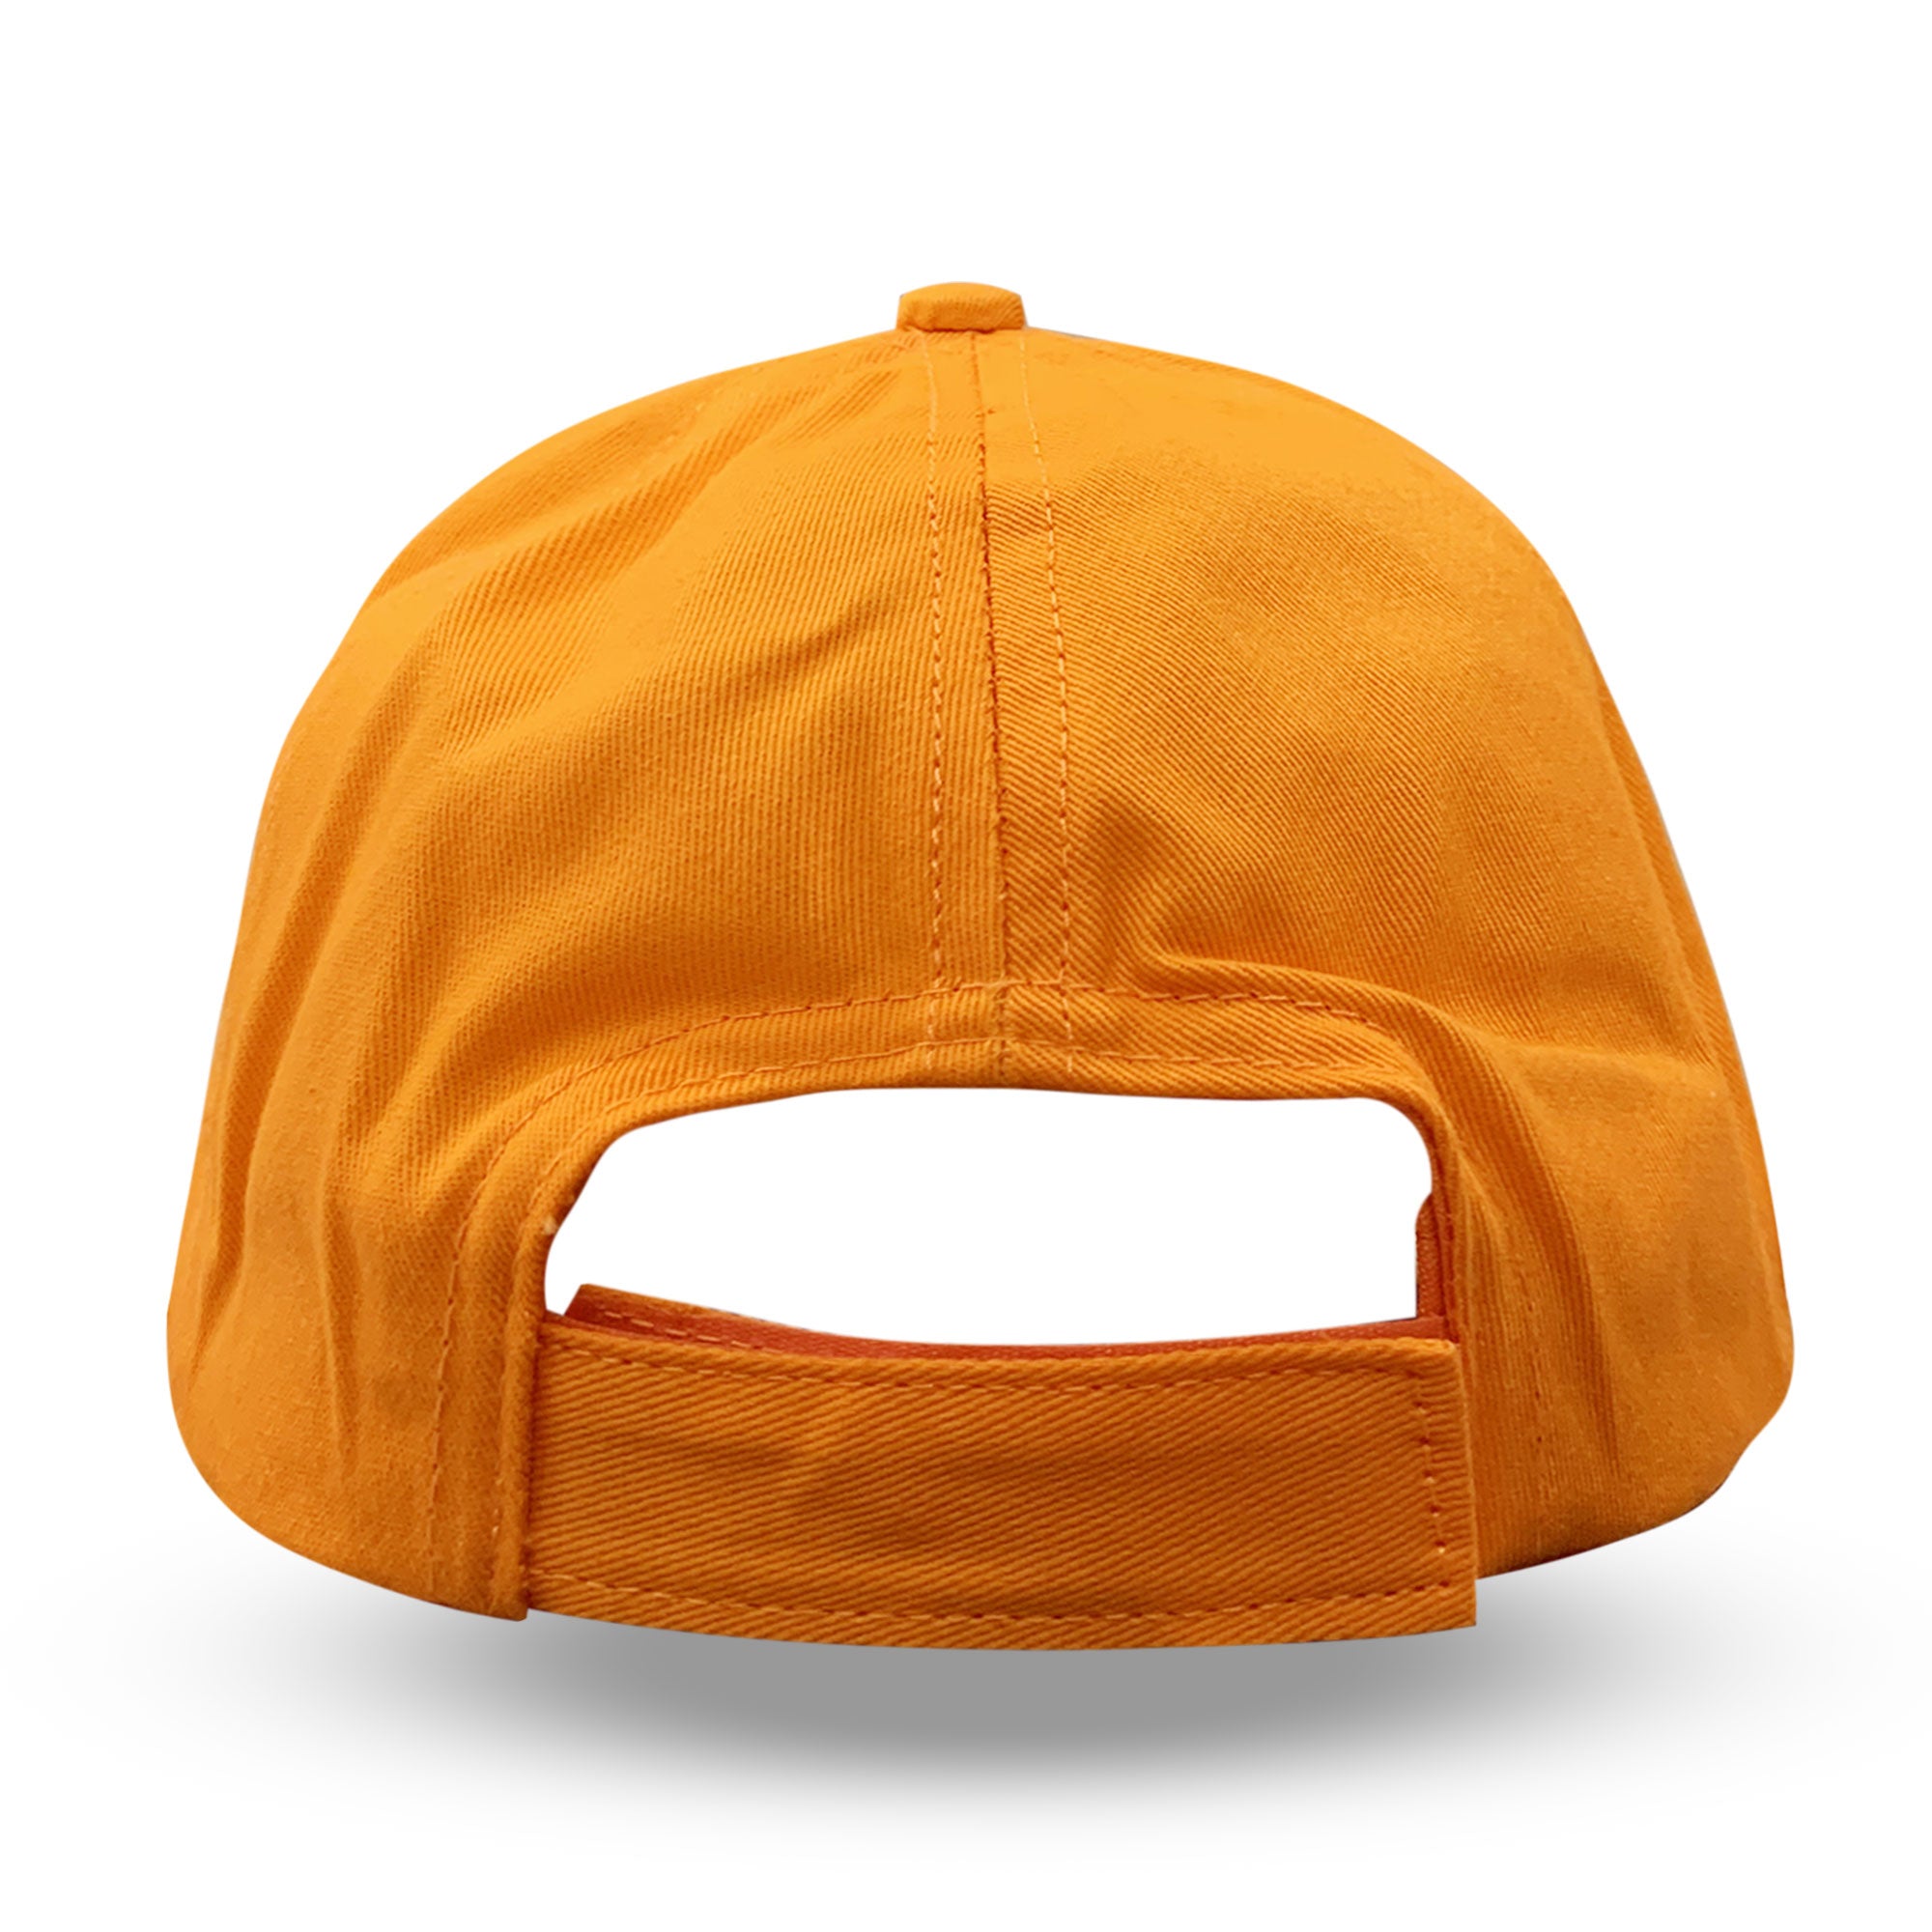 Cappellino per bambino ufficiale Dragon Ball Z berretto con visiera 6171